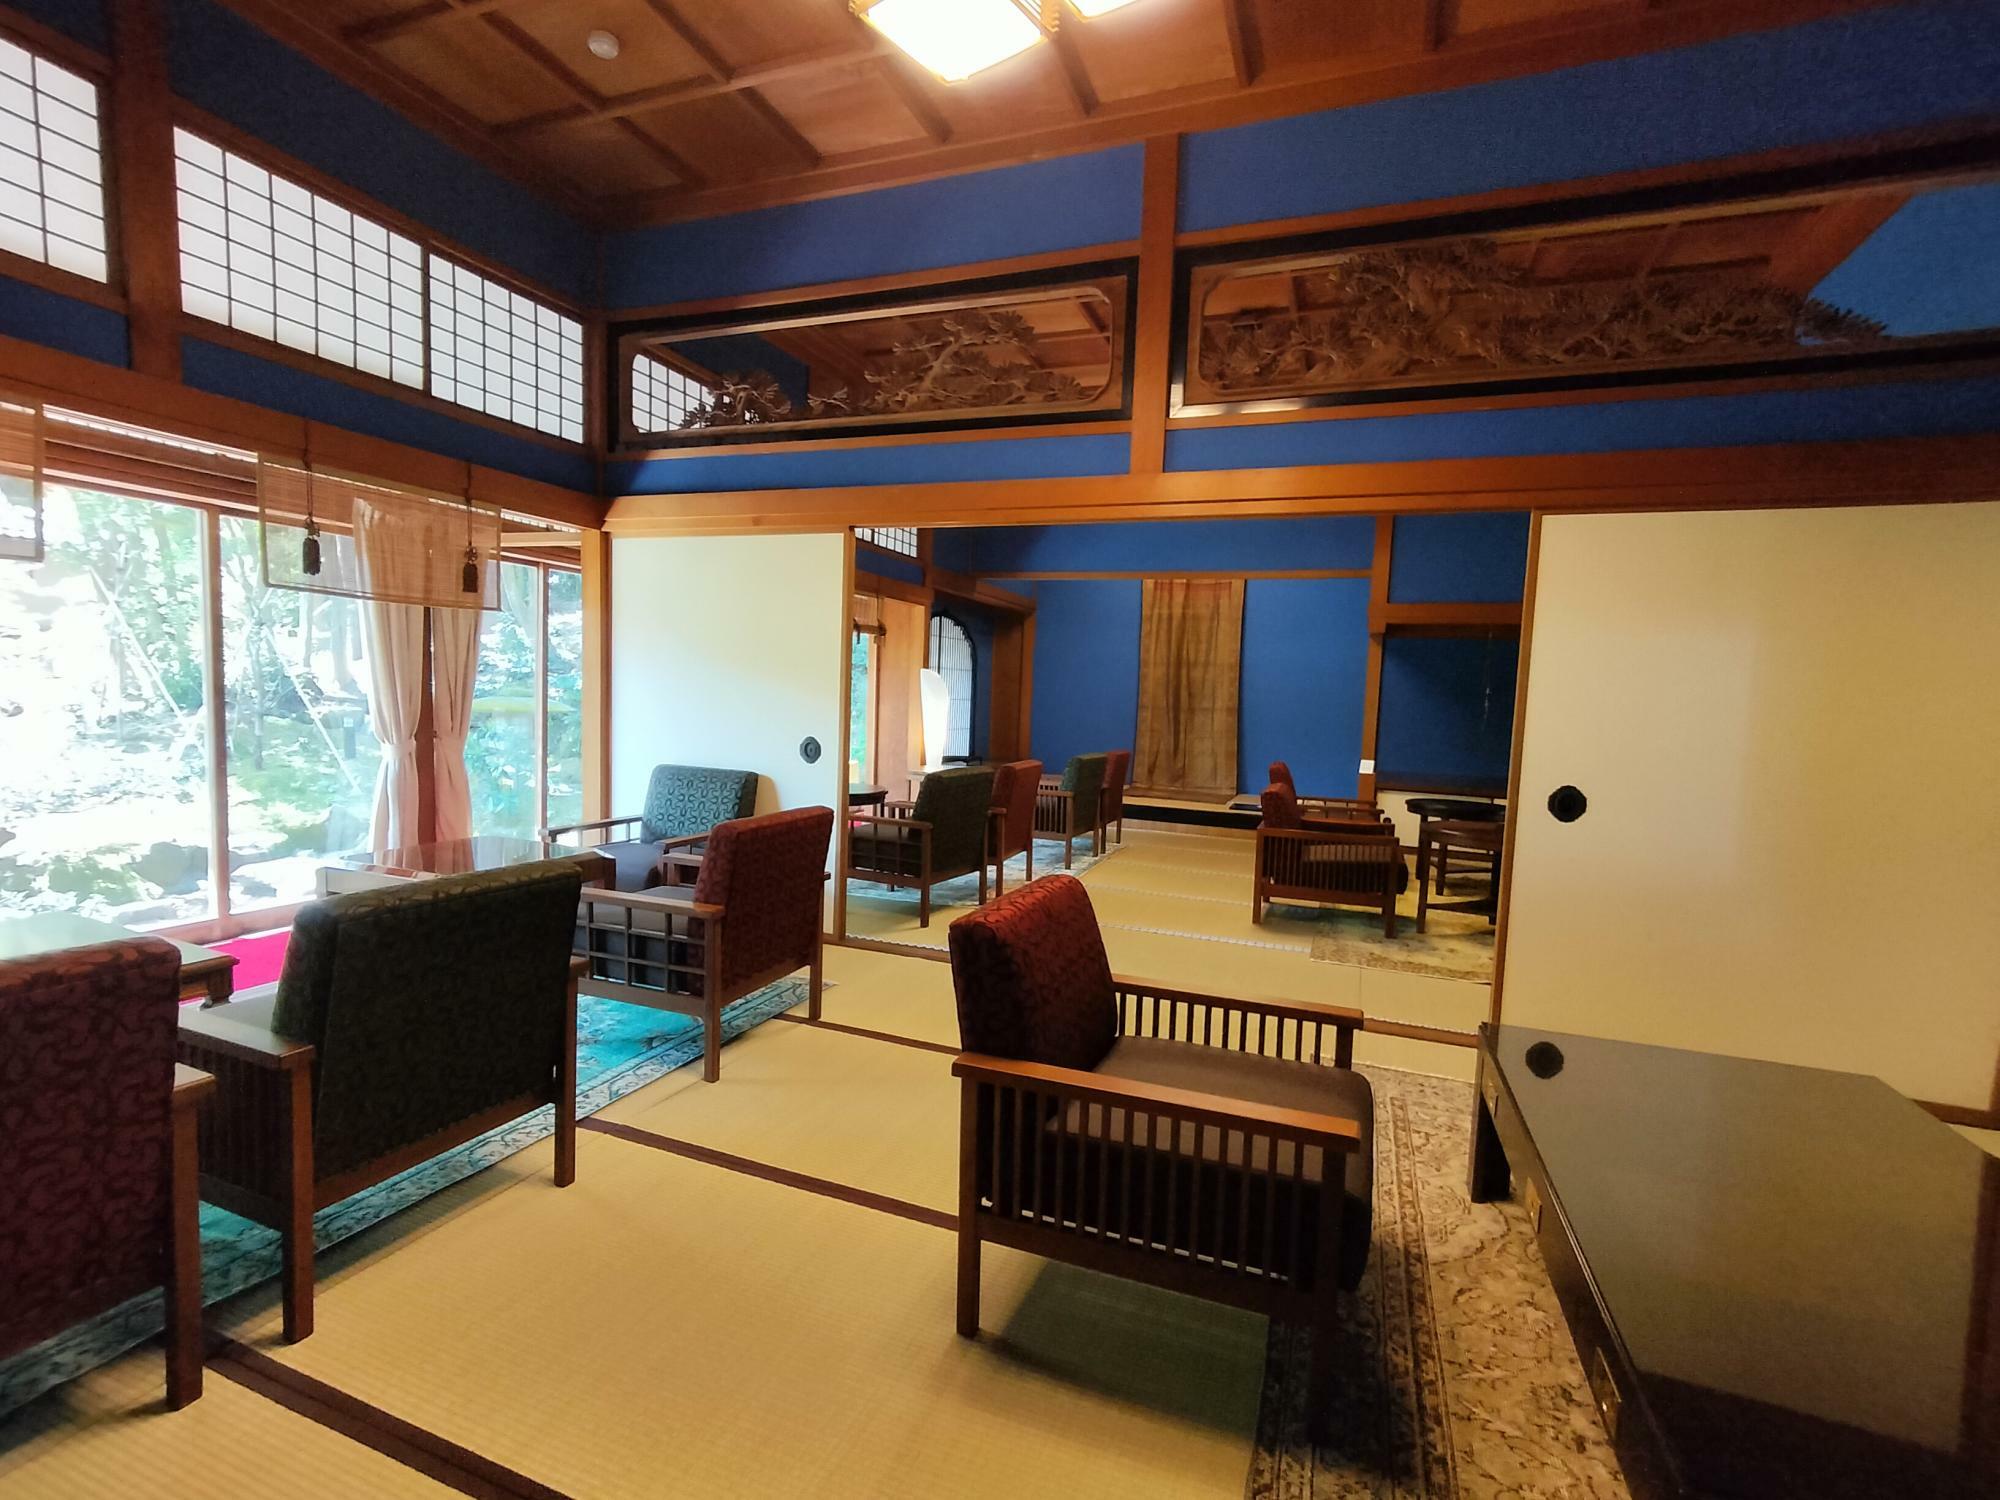 昭和天皇などが宿泊された「御殿」は、カフェとして利用できるようになっている。（画像。筆者撮影）